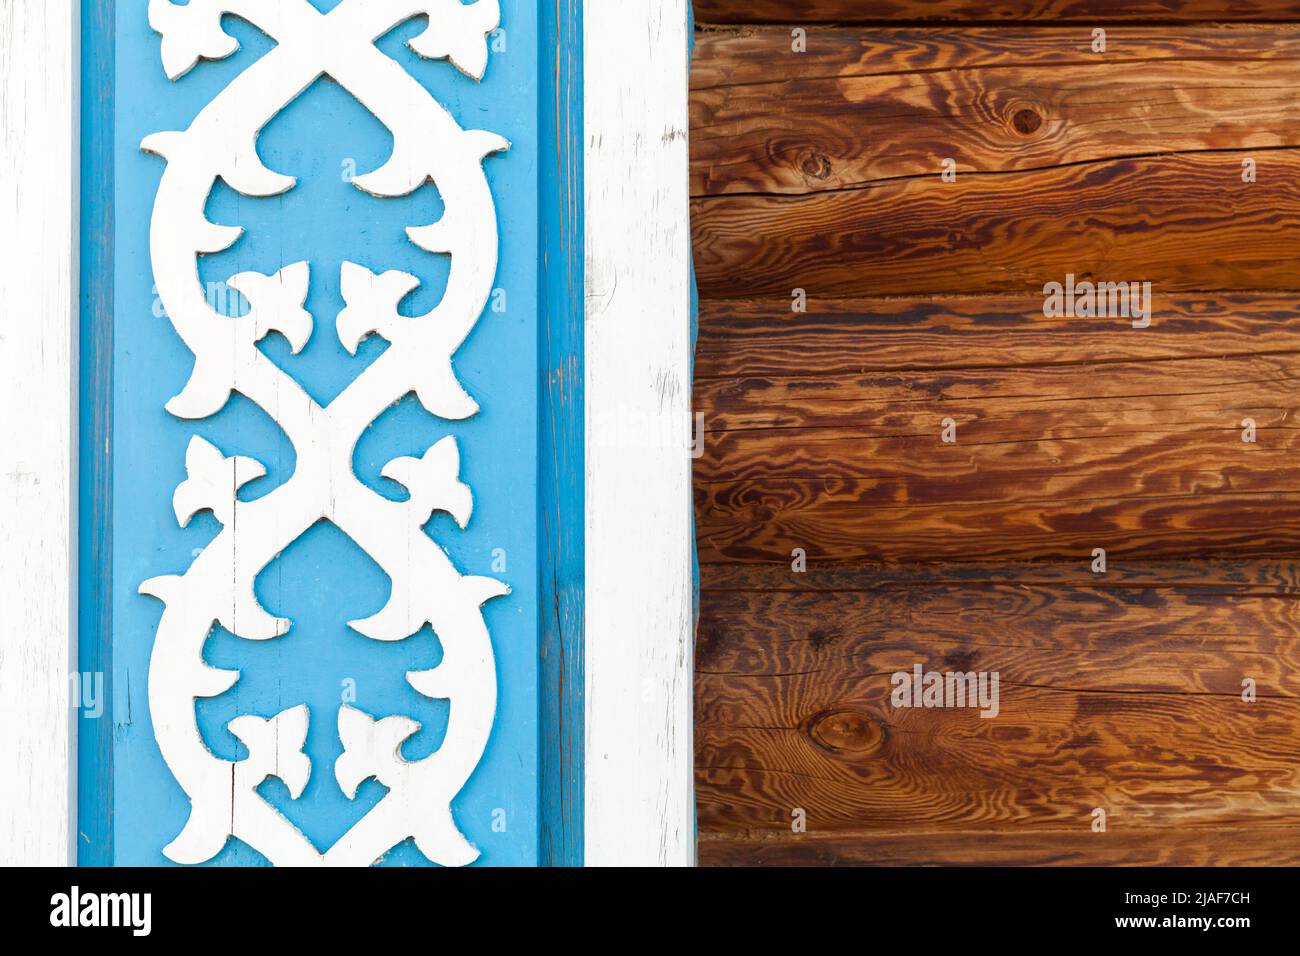 Vecchi elementi decorativi in legno su una parete. Ornamenti in Tatar. Kazan, Russia Foto Stock